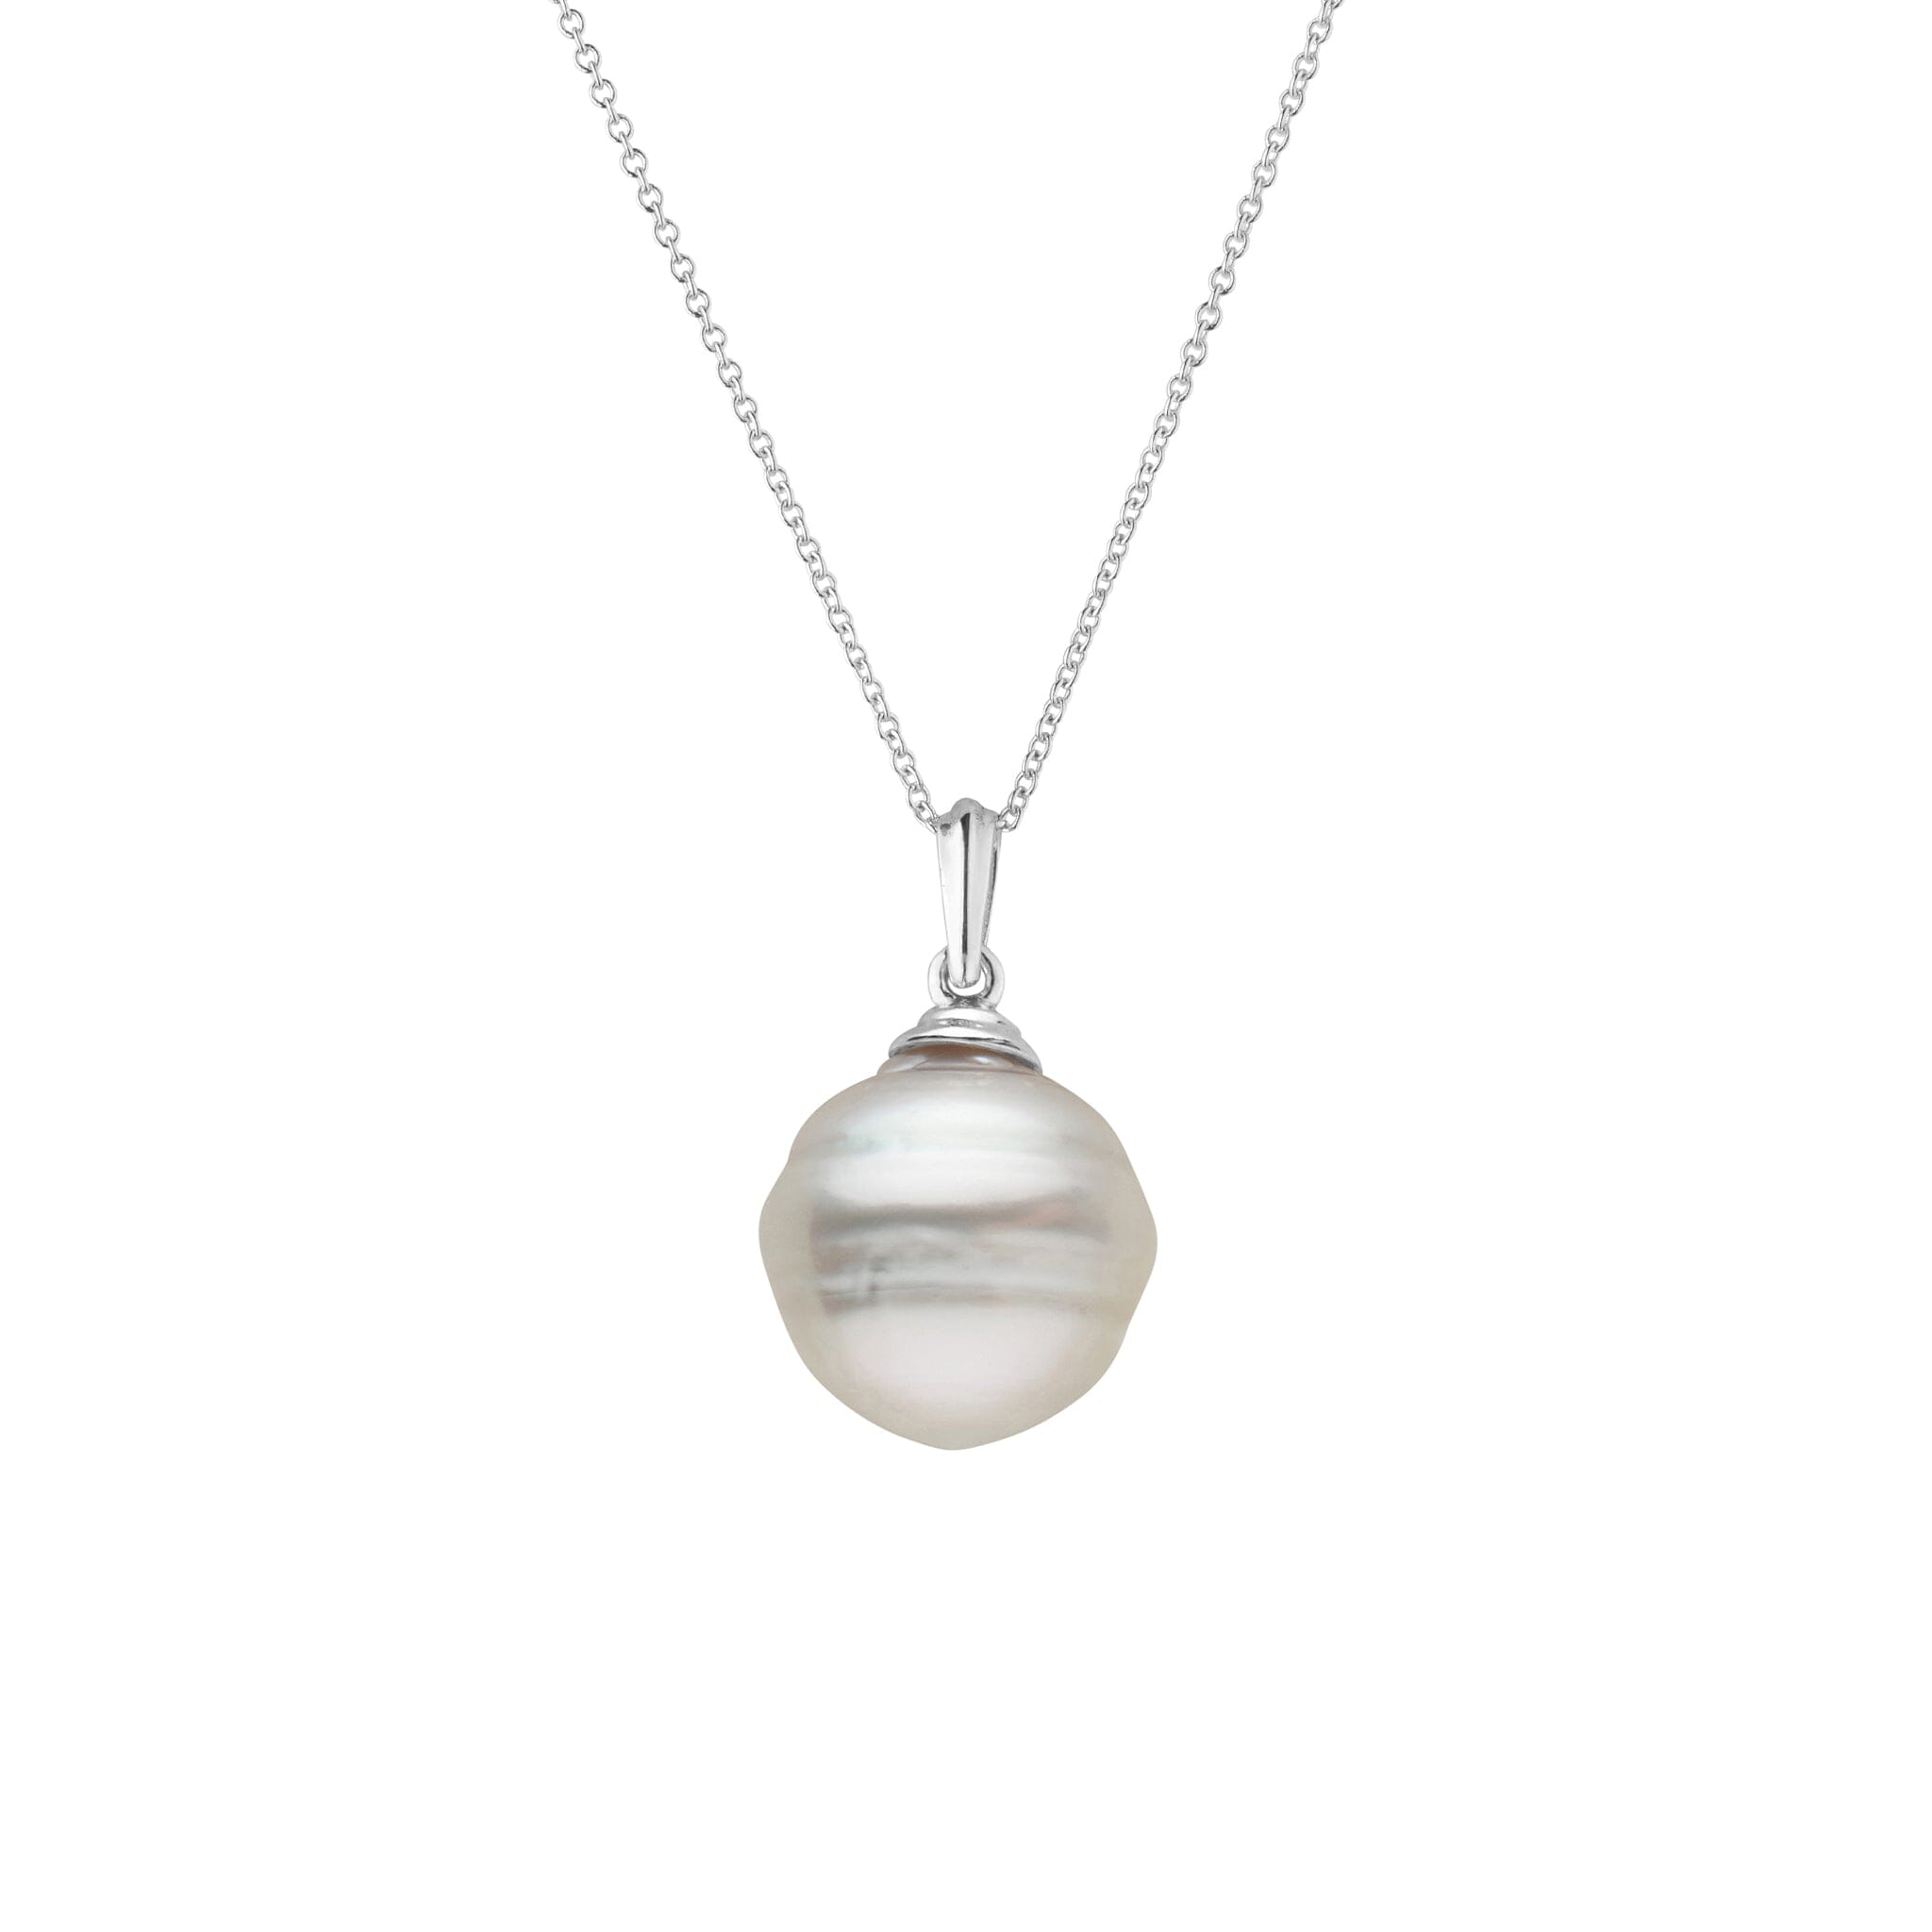 14.0-15.0 mm White South Sea Baroque Pearl Pendant